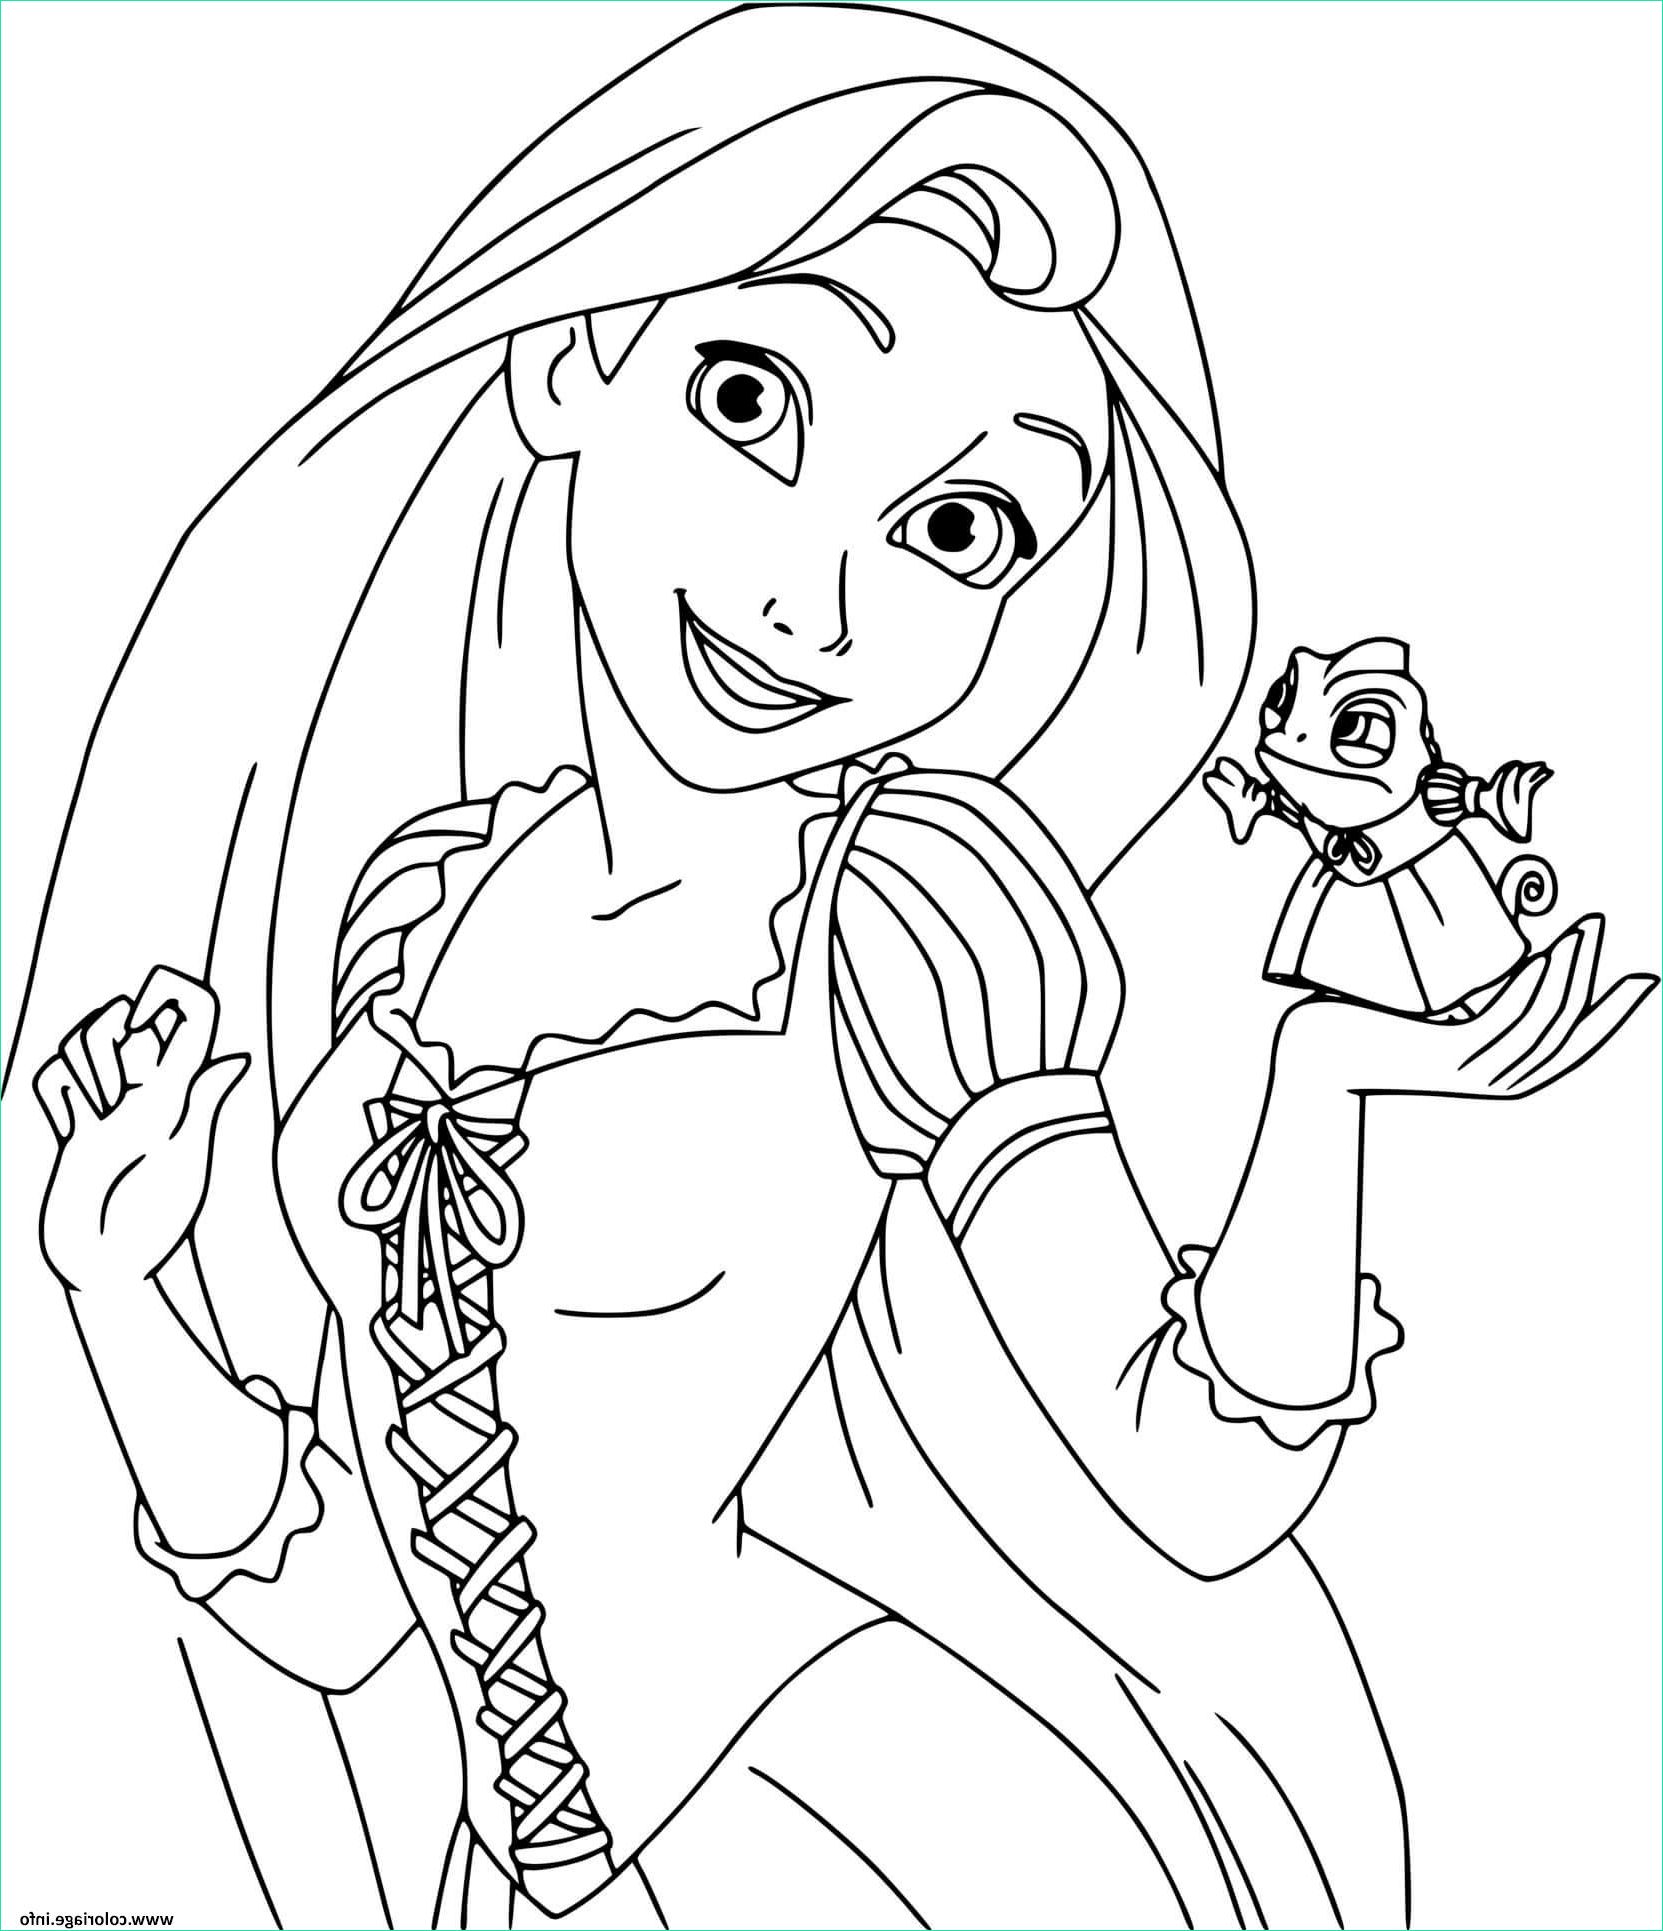 la princesse raiponce rapunzel du conte raiponce des freres grimm coloriage